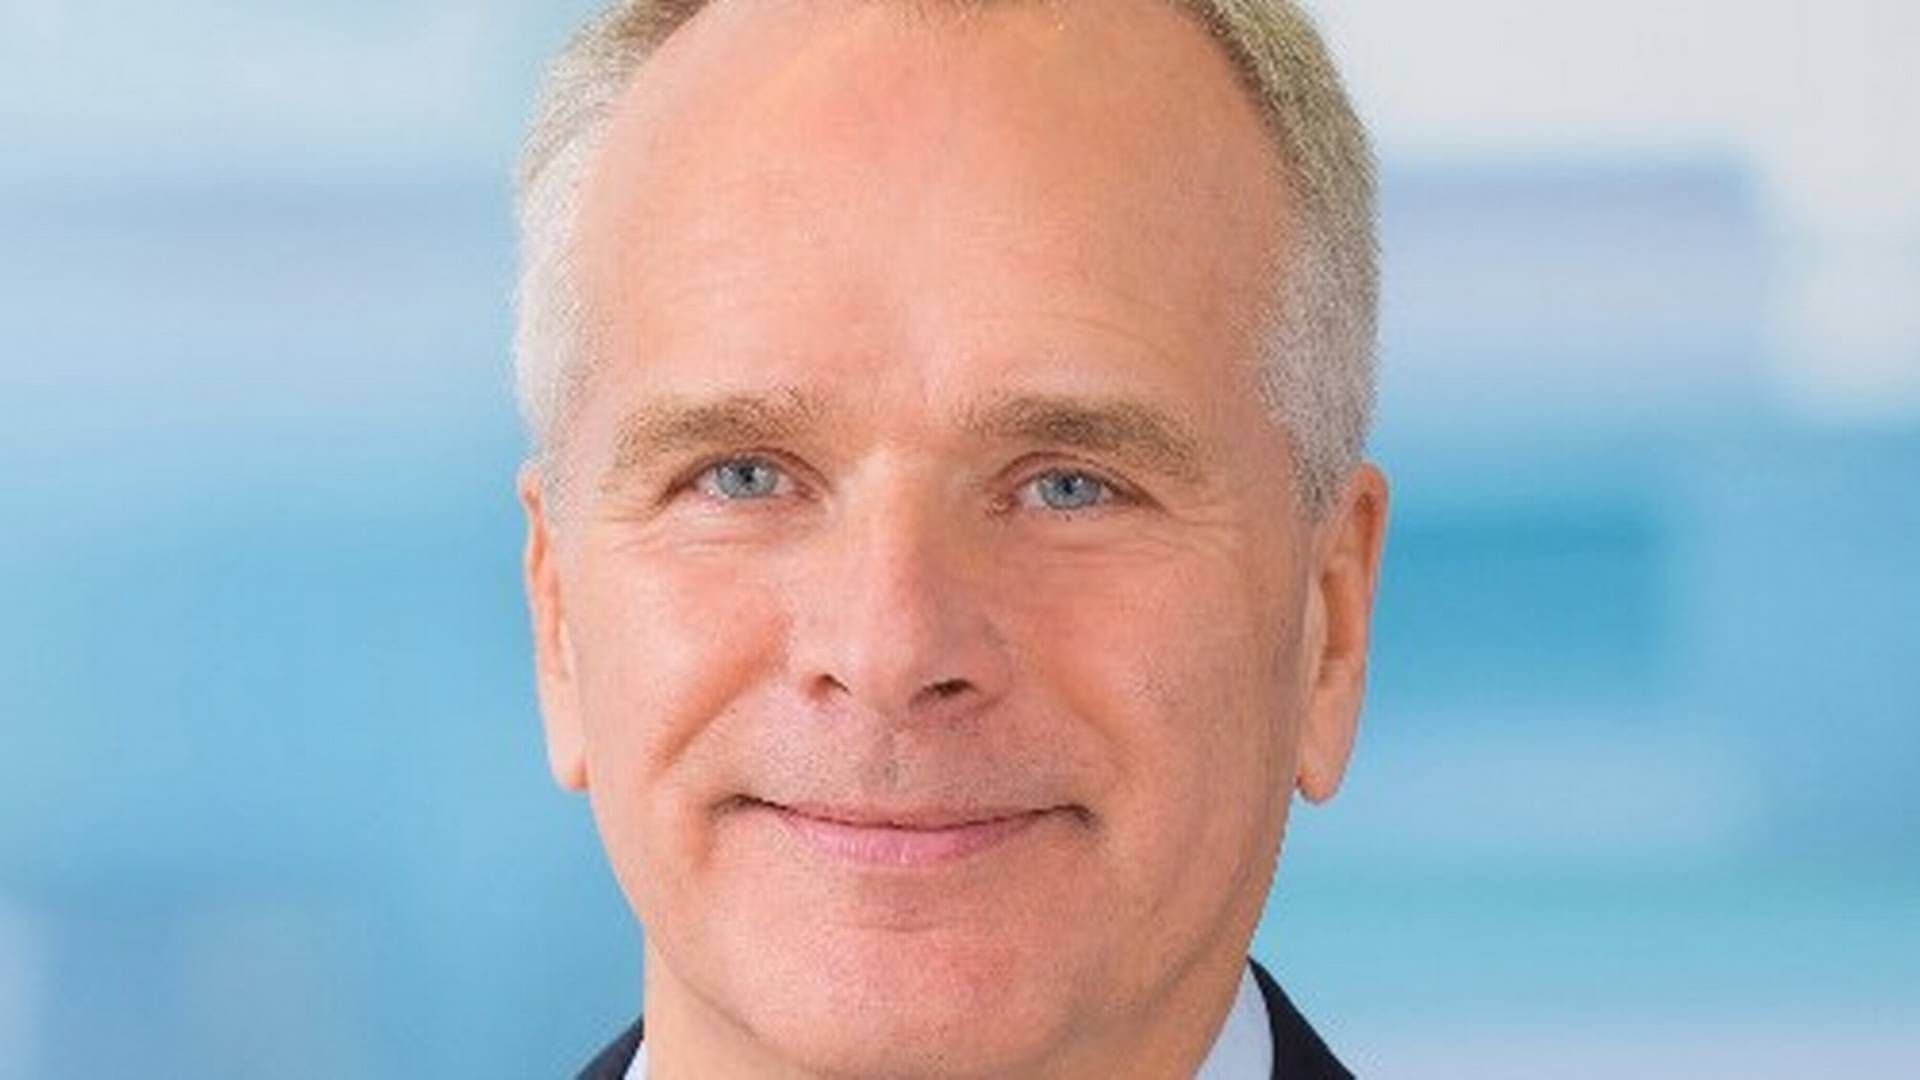 KONKURS: Bernt B. Rasmussen er administrerende direktør i Bertoni, som er erklært konkurs i Danmark.